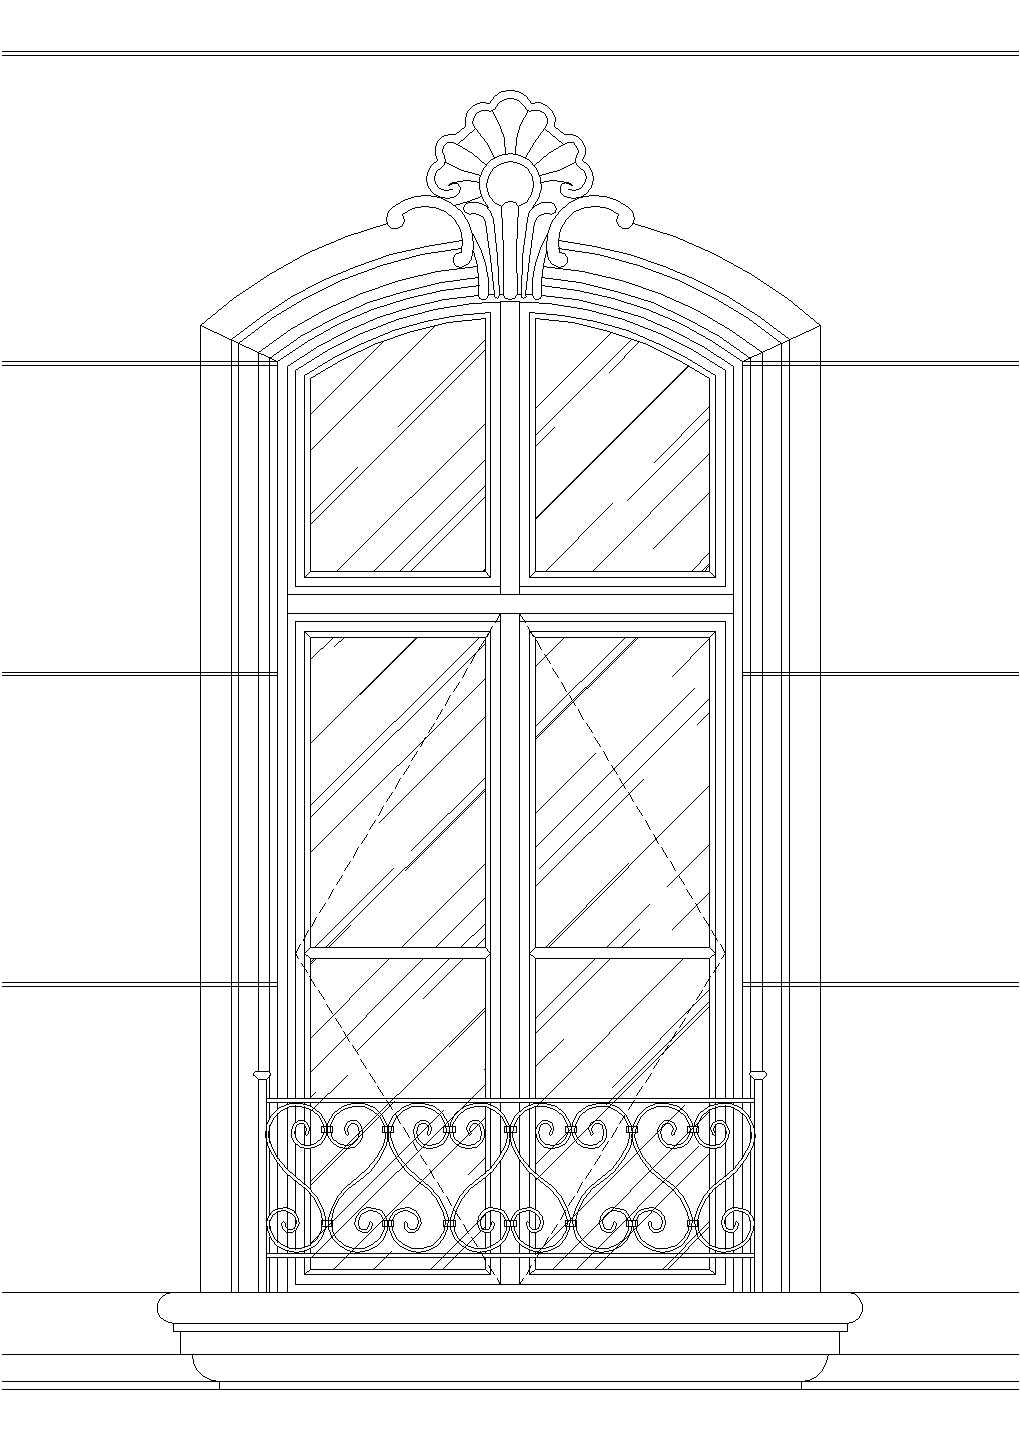 建筑常用中式经典风格门窗设计cad素材图例集合（甲级院设计，种类全）